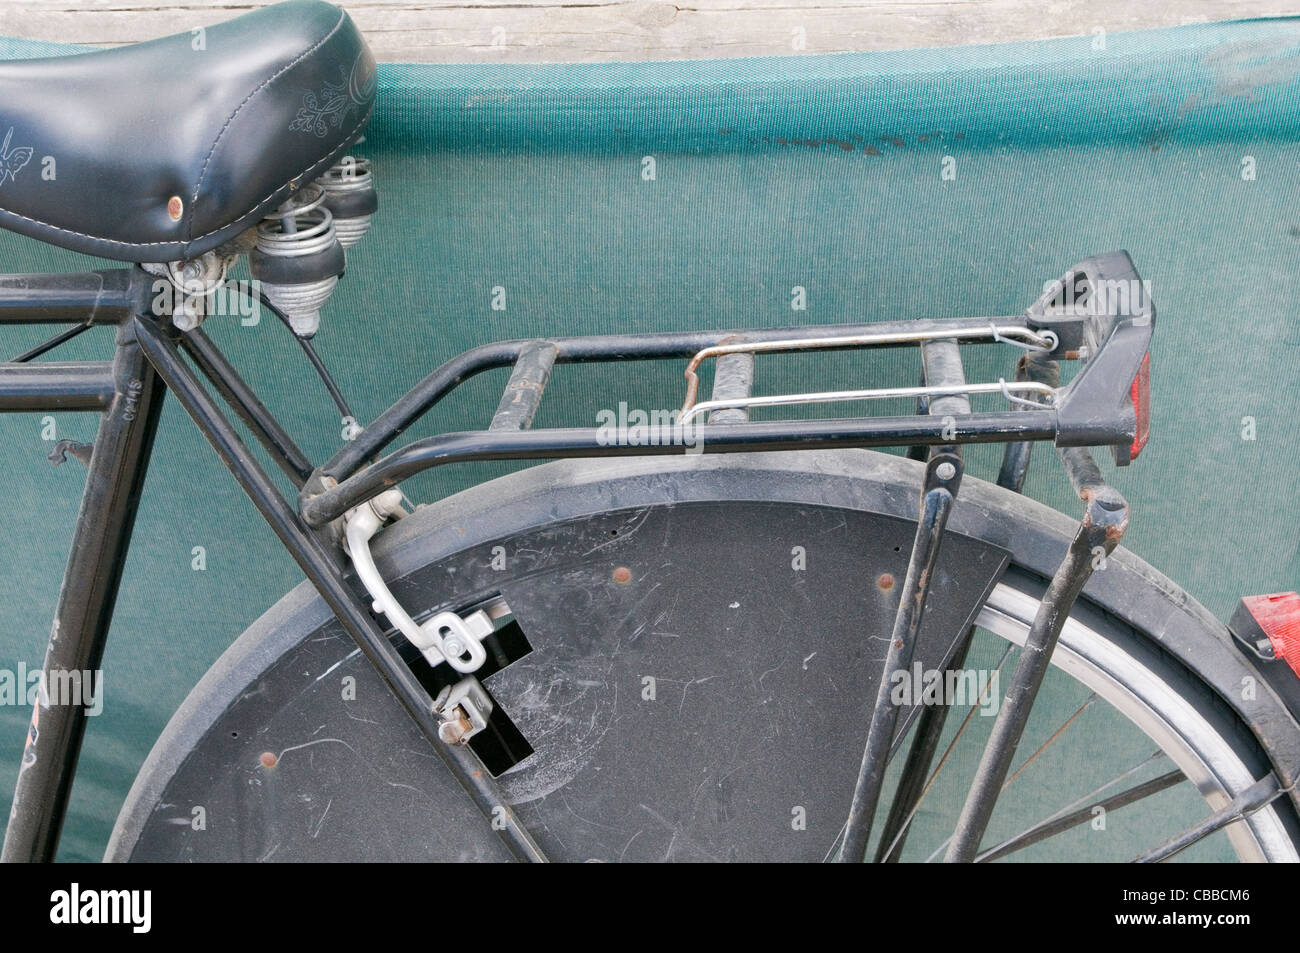 Gepäckträger Fahrrad schieben Mopeds Zyklus Kathoden Laufrad Rahmen hinten  mit Rahmen Stockfotografie - Alamy